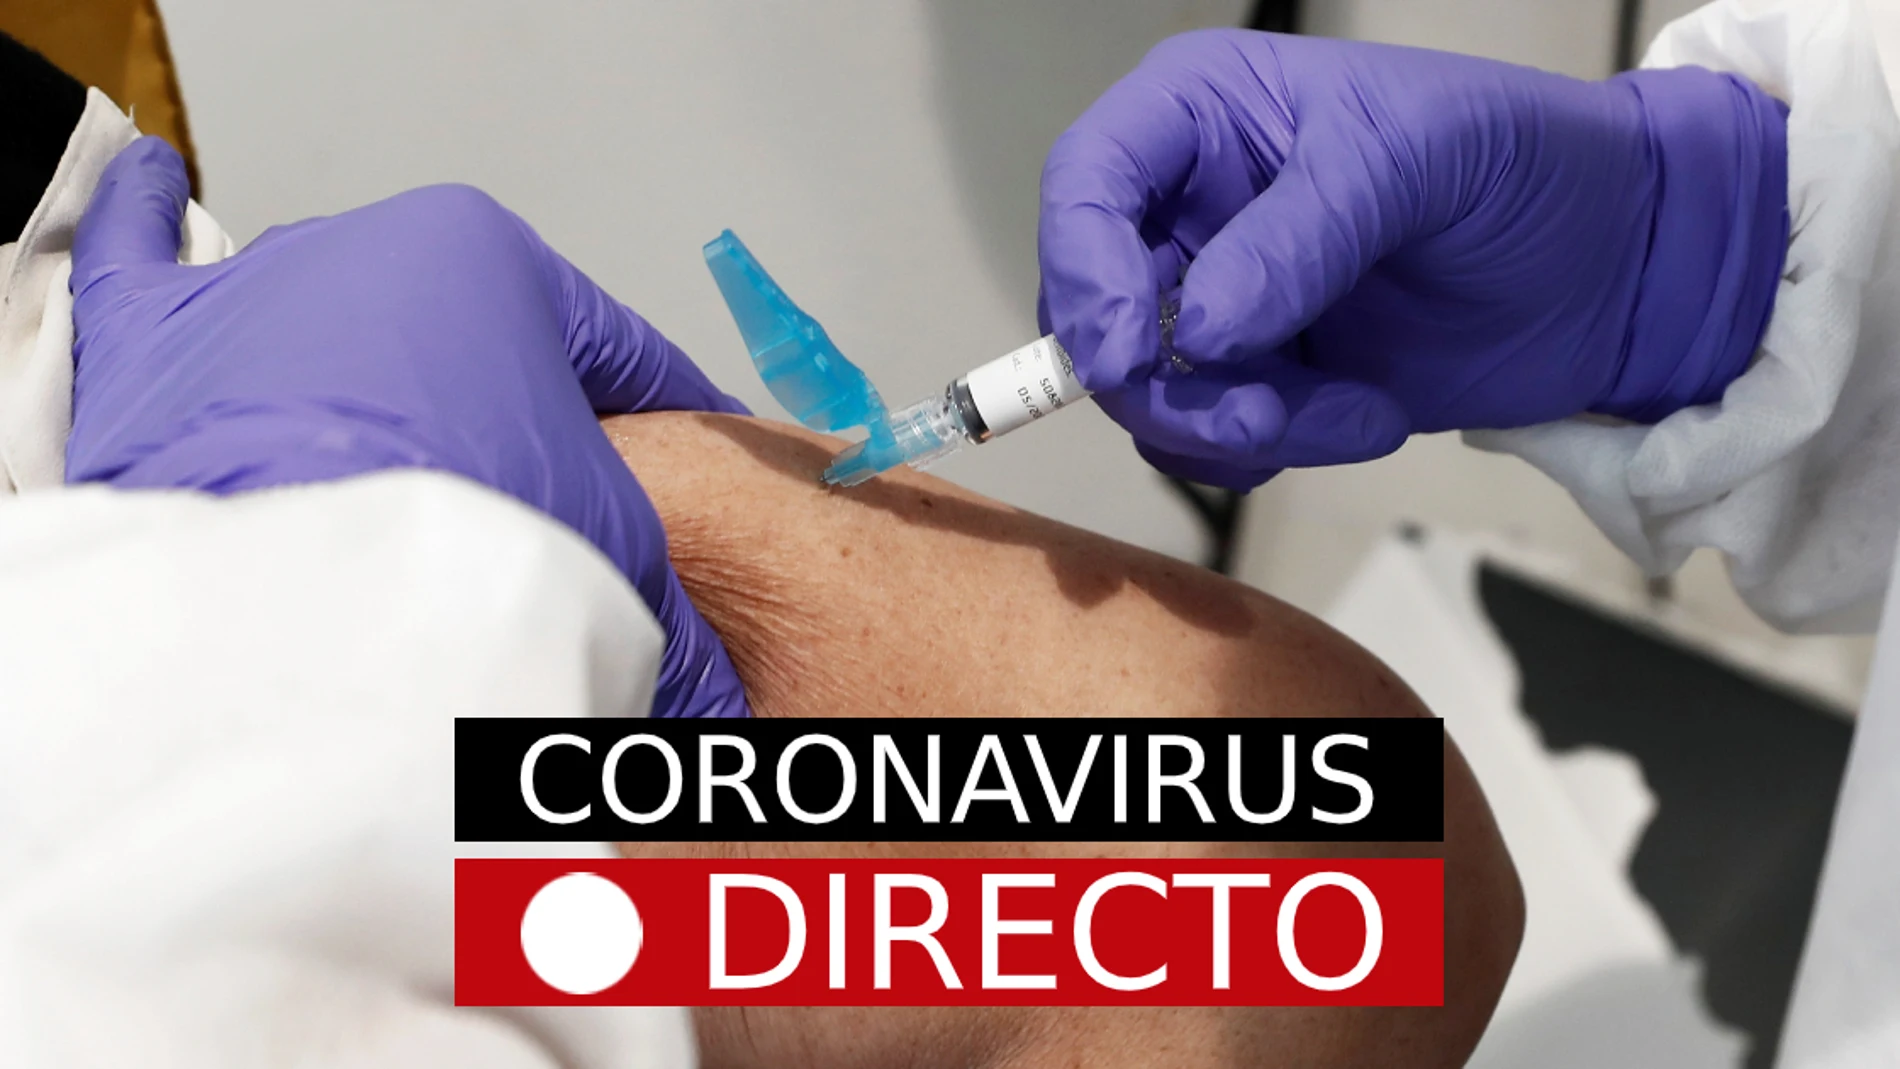 Coronavirus España, toque de queda en Madrid: Última hora del estado de alarma y confinamiento por COVID-19, EN DIRECTO